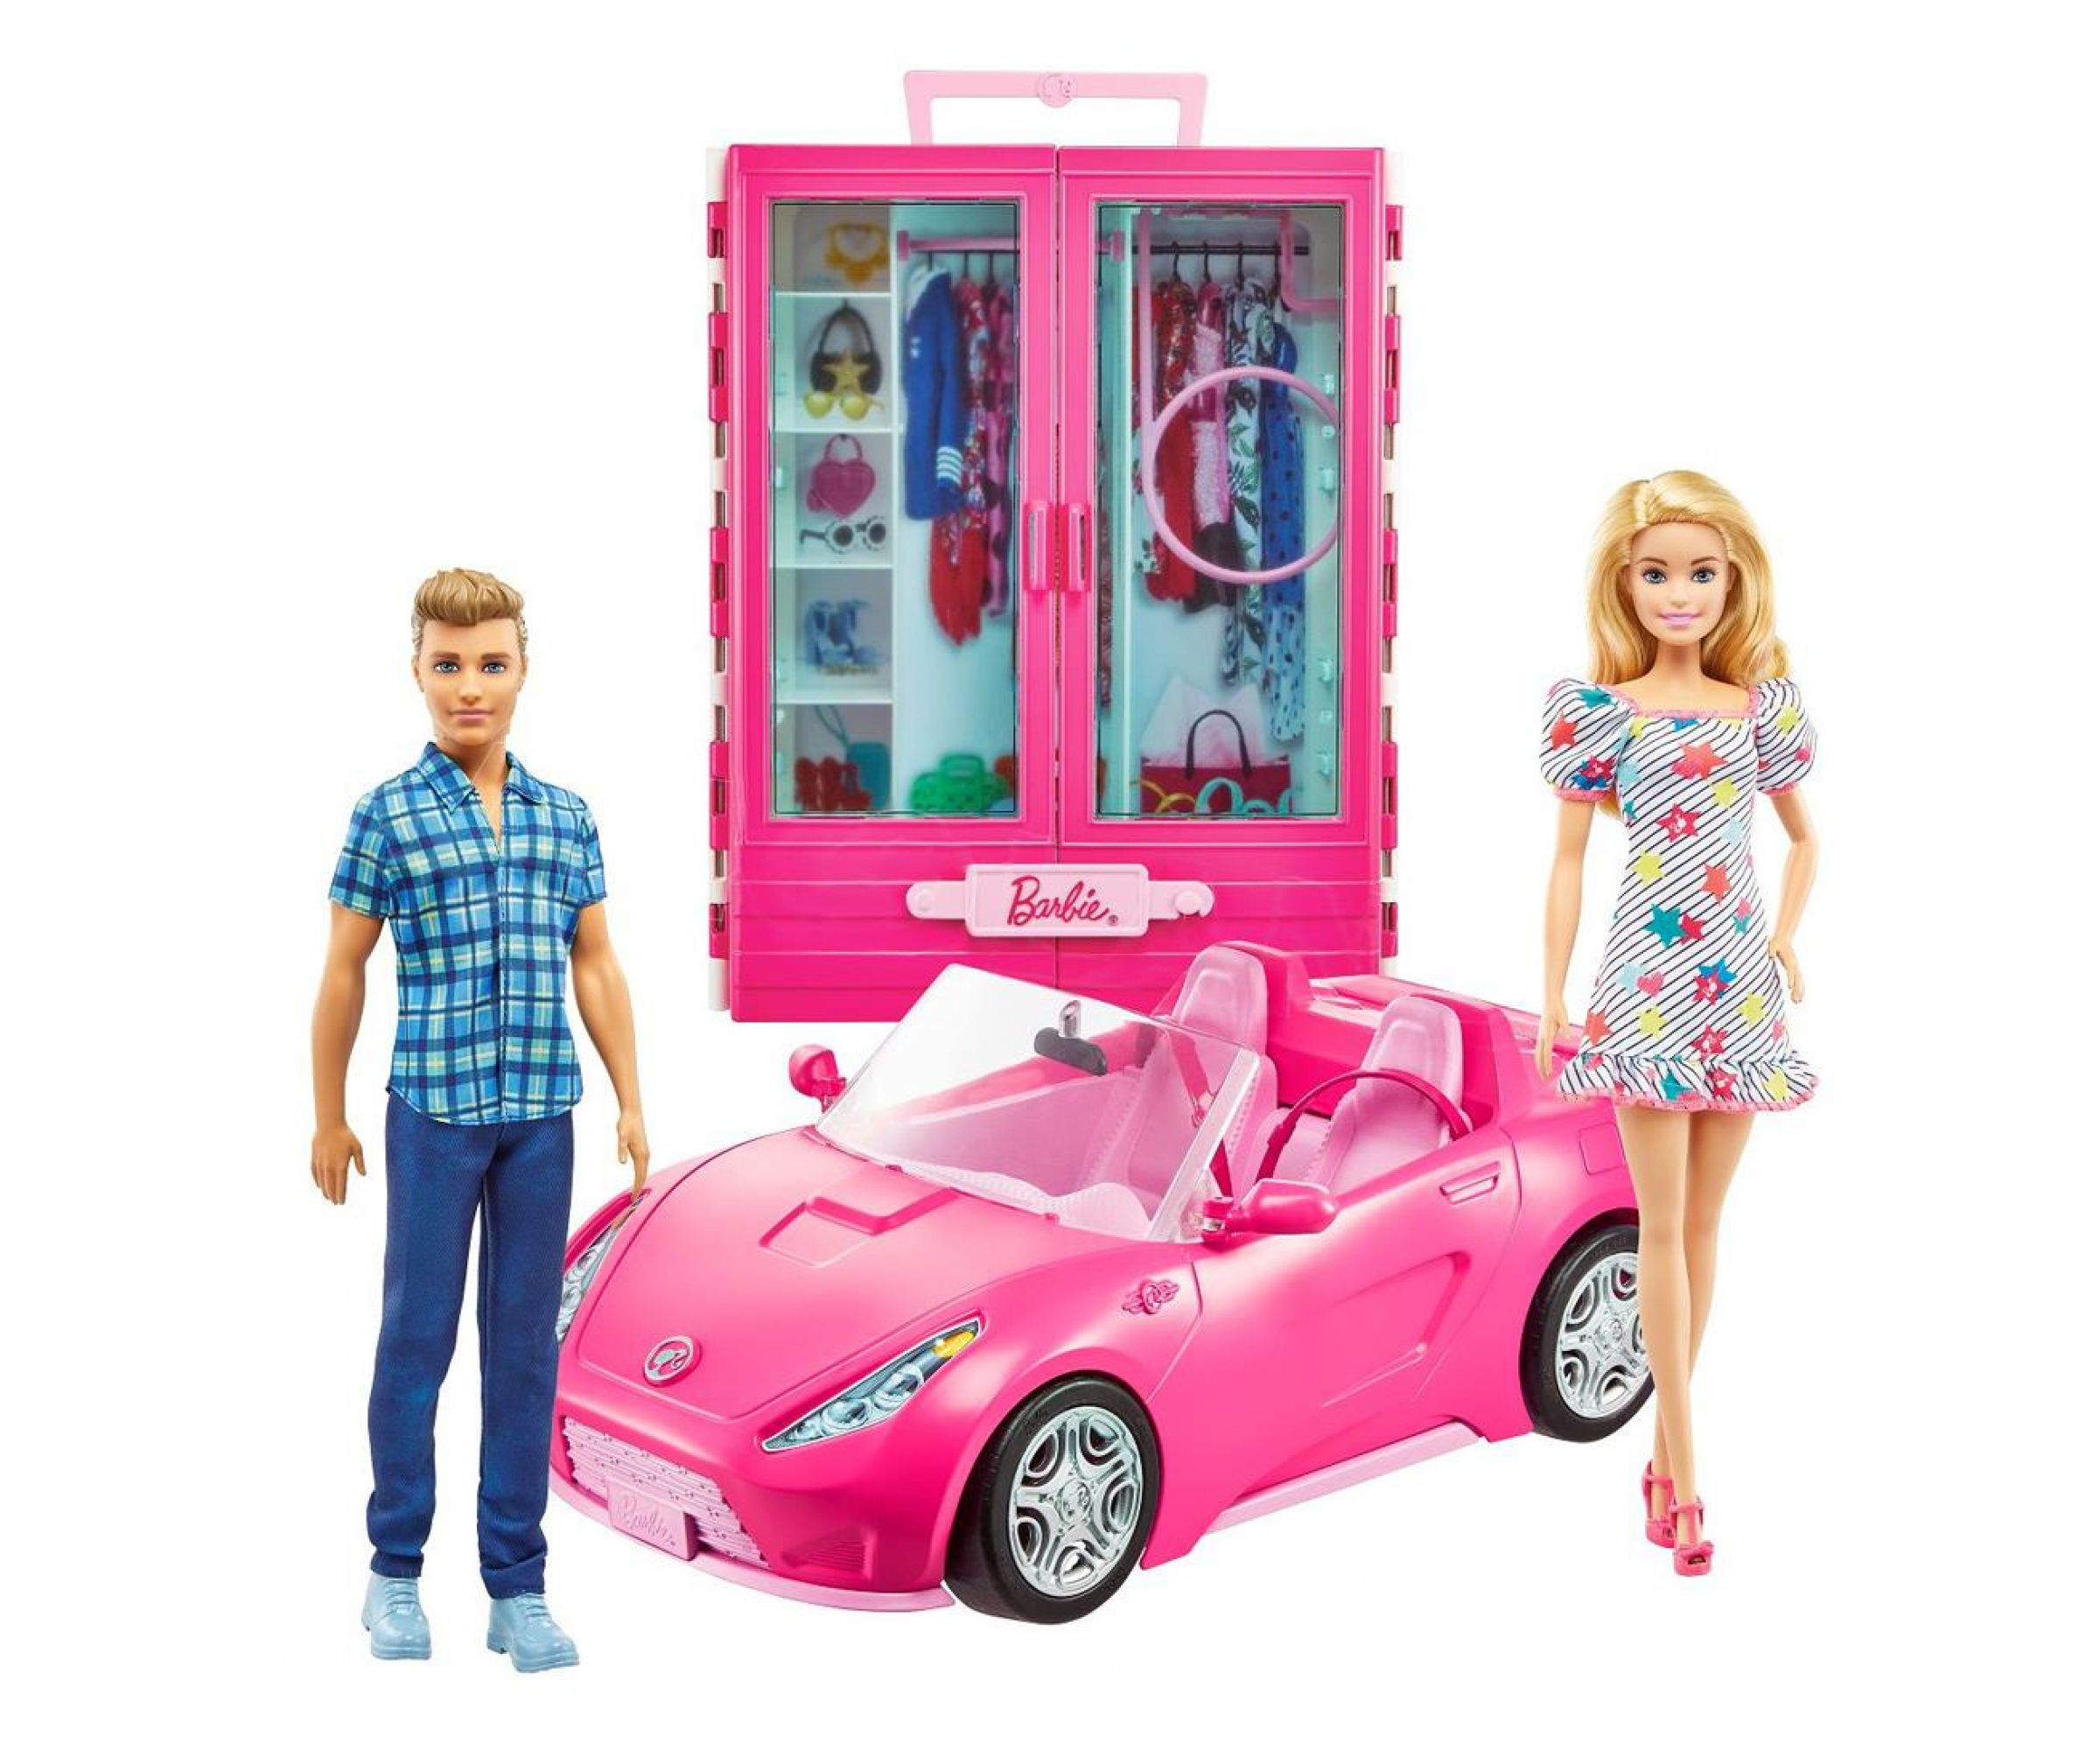 Машина для кукол купить. Набор Barbie и Кен с гардеробом и розовым кабриолетом,. Игровой набор Барби Кен кабриолет гардероб. Набор Barbie гламурный кабриолет, djr55. Кен и Барби на машинке розовой.